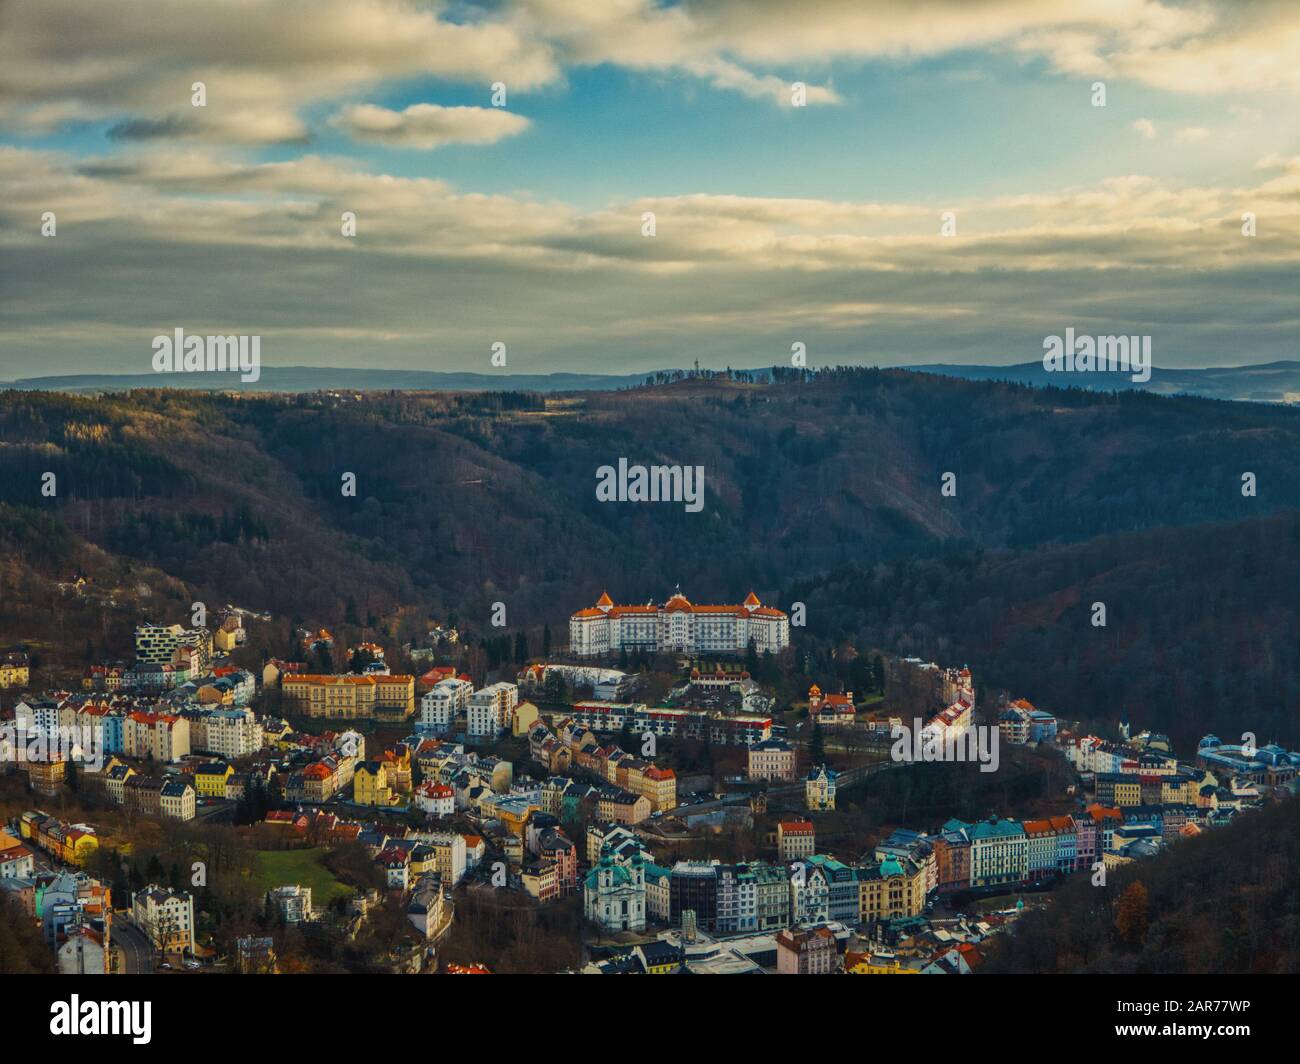 Karlovy Vary, Tschechien 24. Januar 2020 - Lufthotel Imperial in Karlsbad mit umliegenden alten Häusern unter hellem Sonnenlicht während der Winte Stockfoto